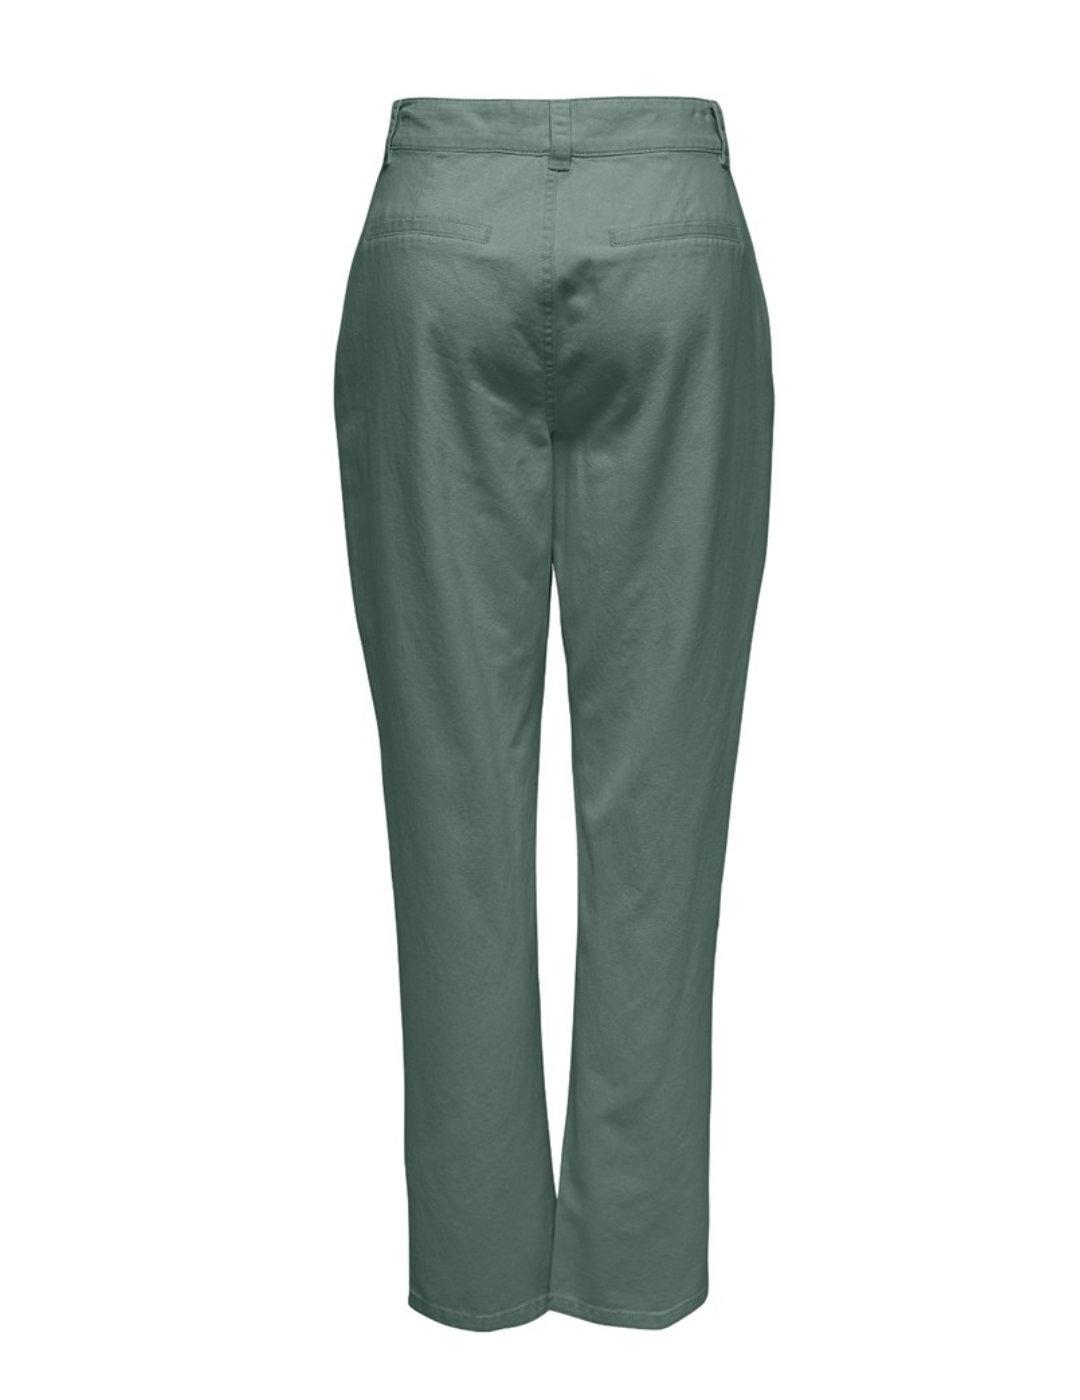 Pantalón chino Darsy verde oscuro tiro alto para mujer